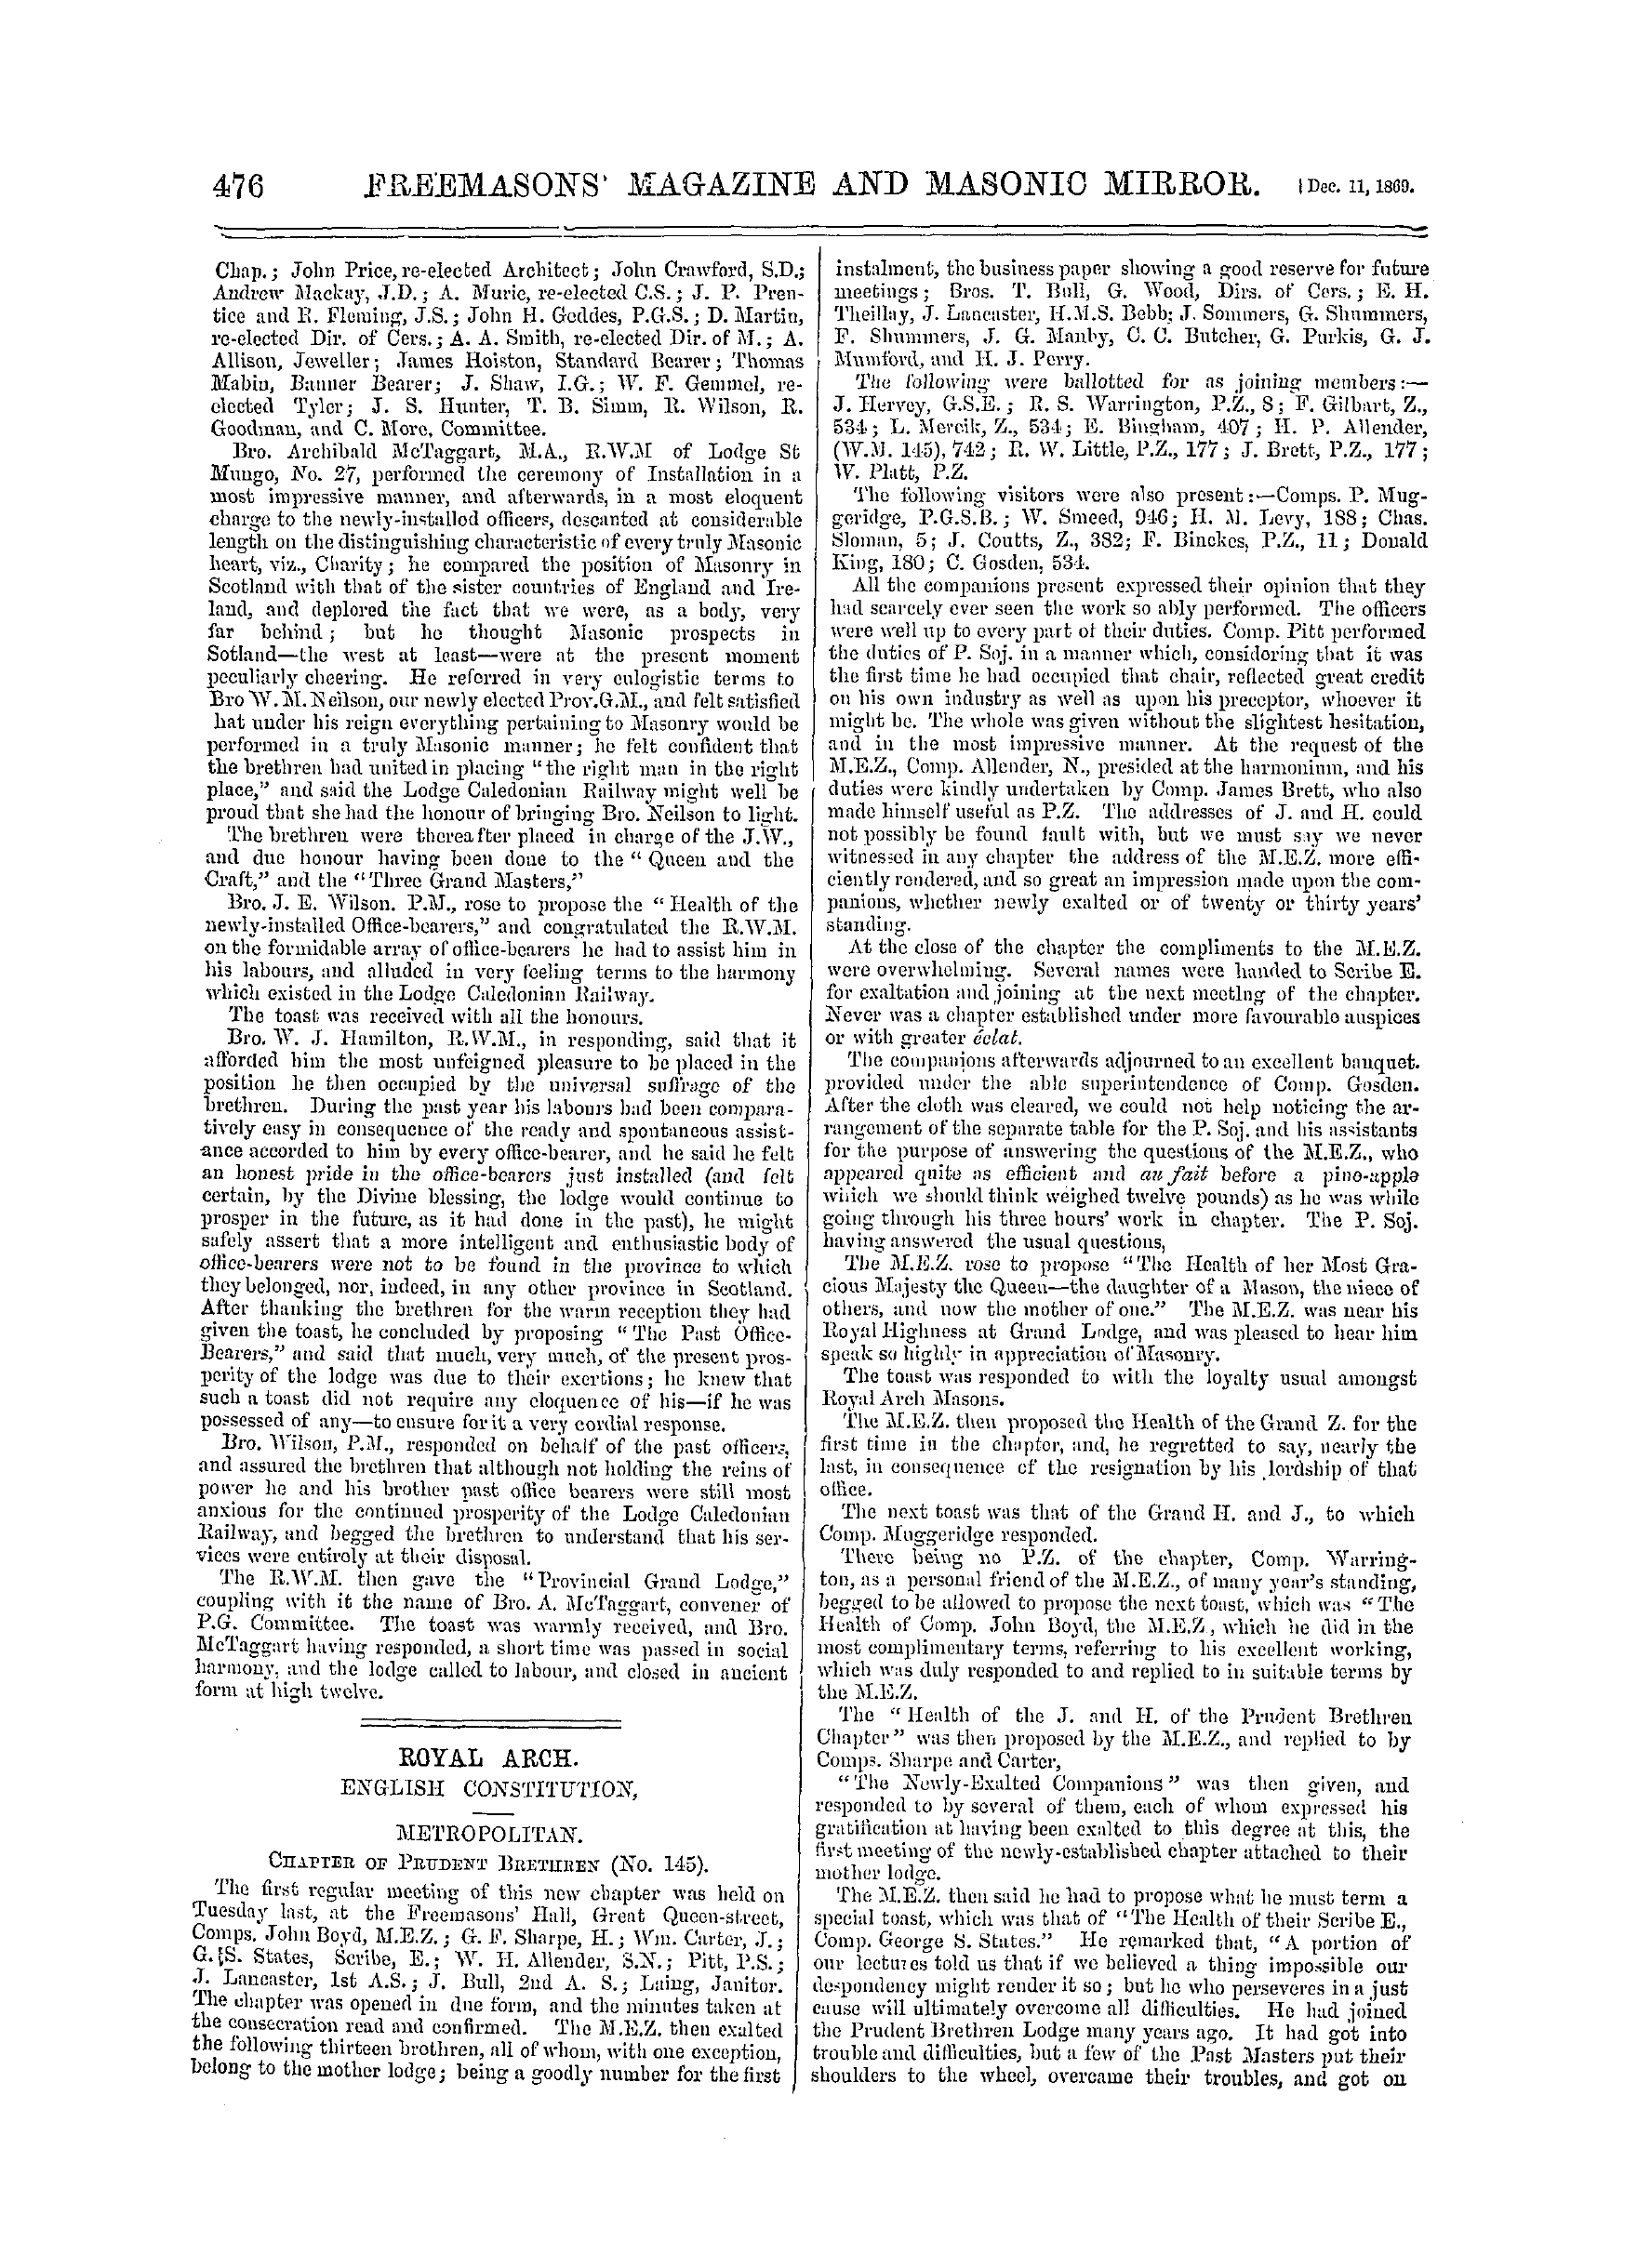 The Freemasons' Monthly Magazine: 1869-12-11: 16